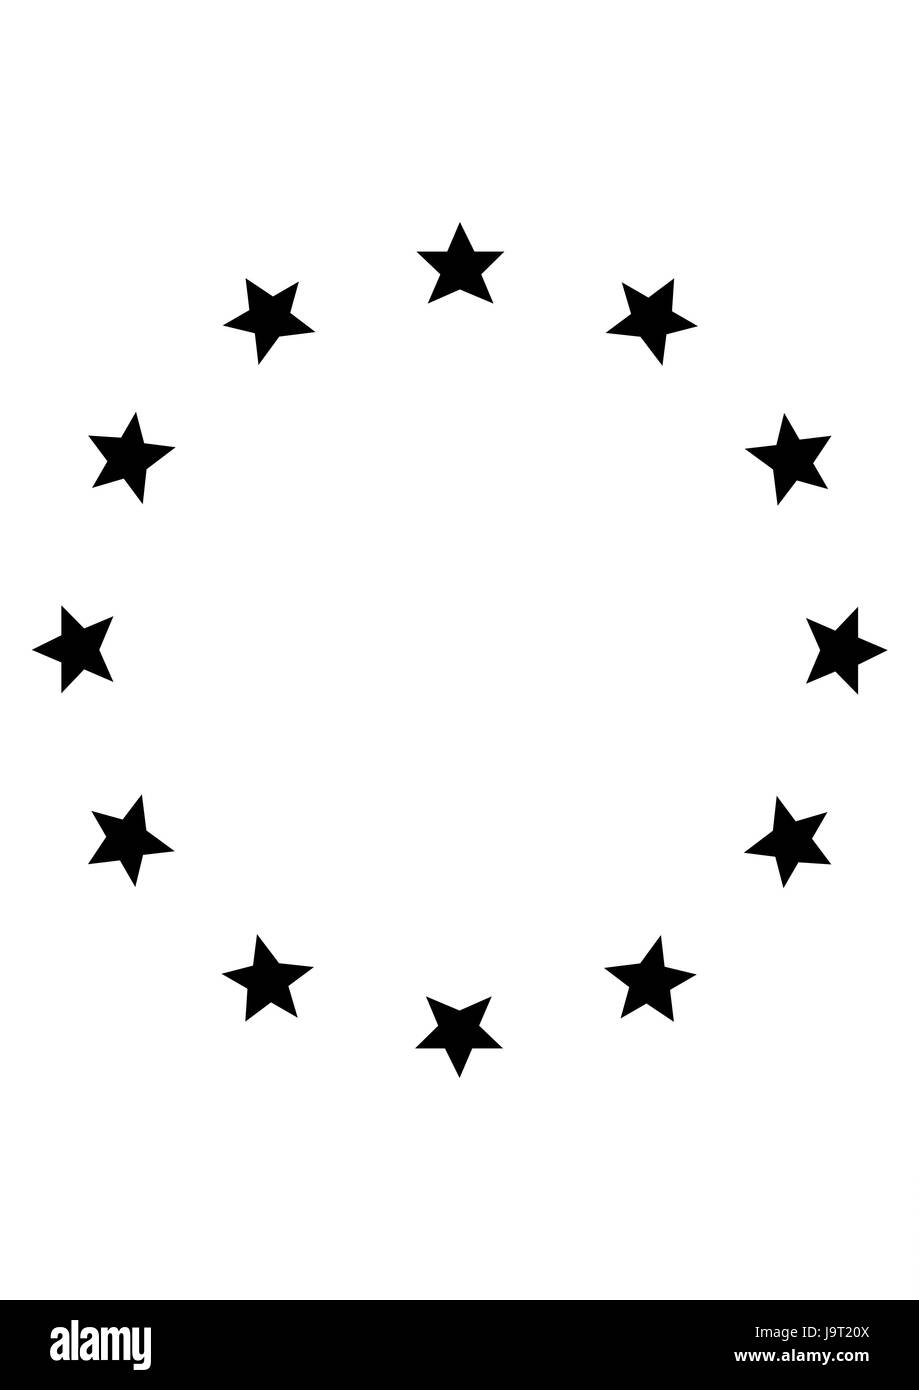 Europaflagge Ausgeschnittene Stockfotos und -bilder - Alamy